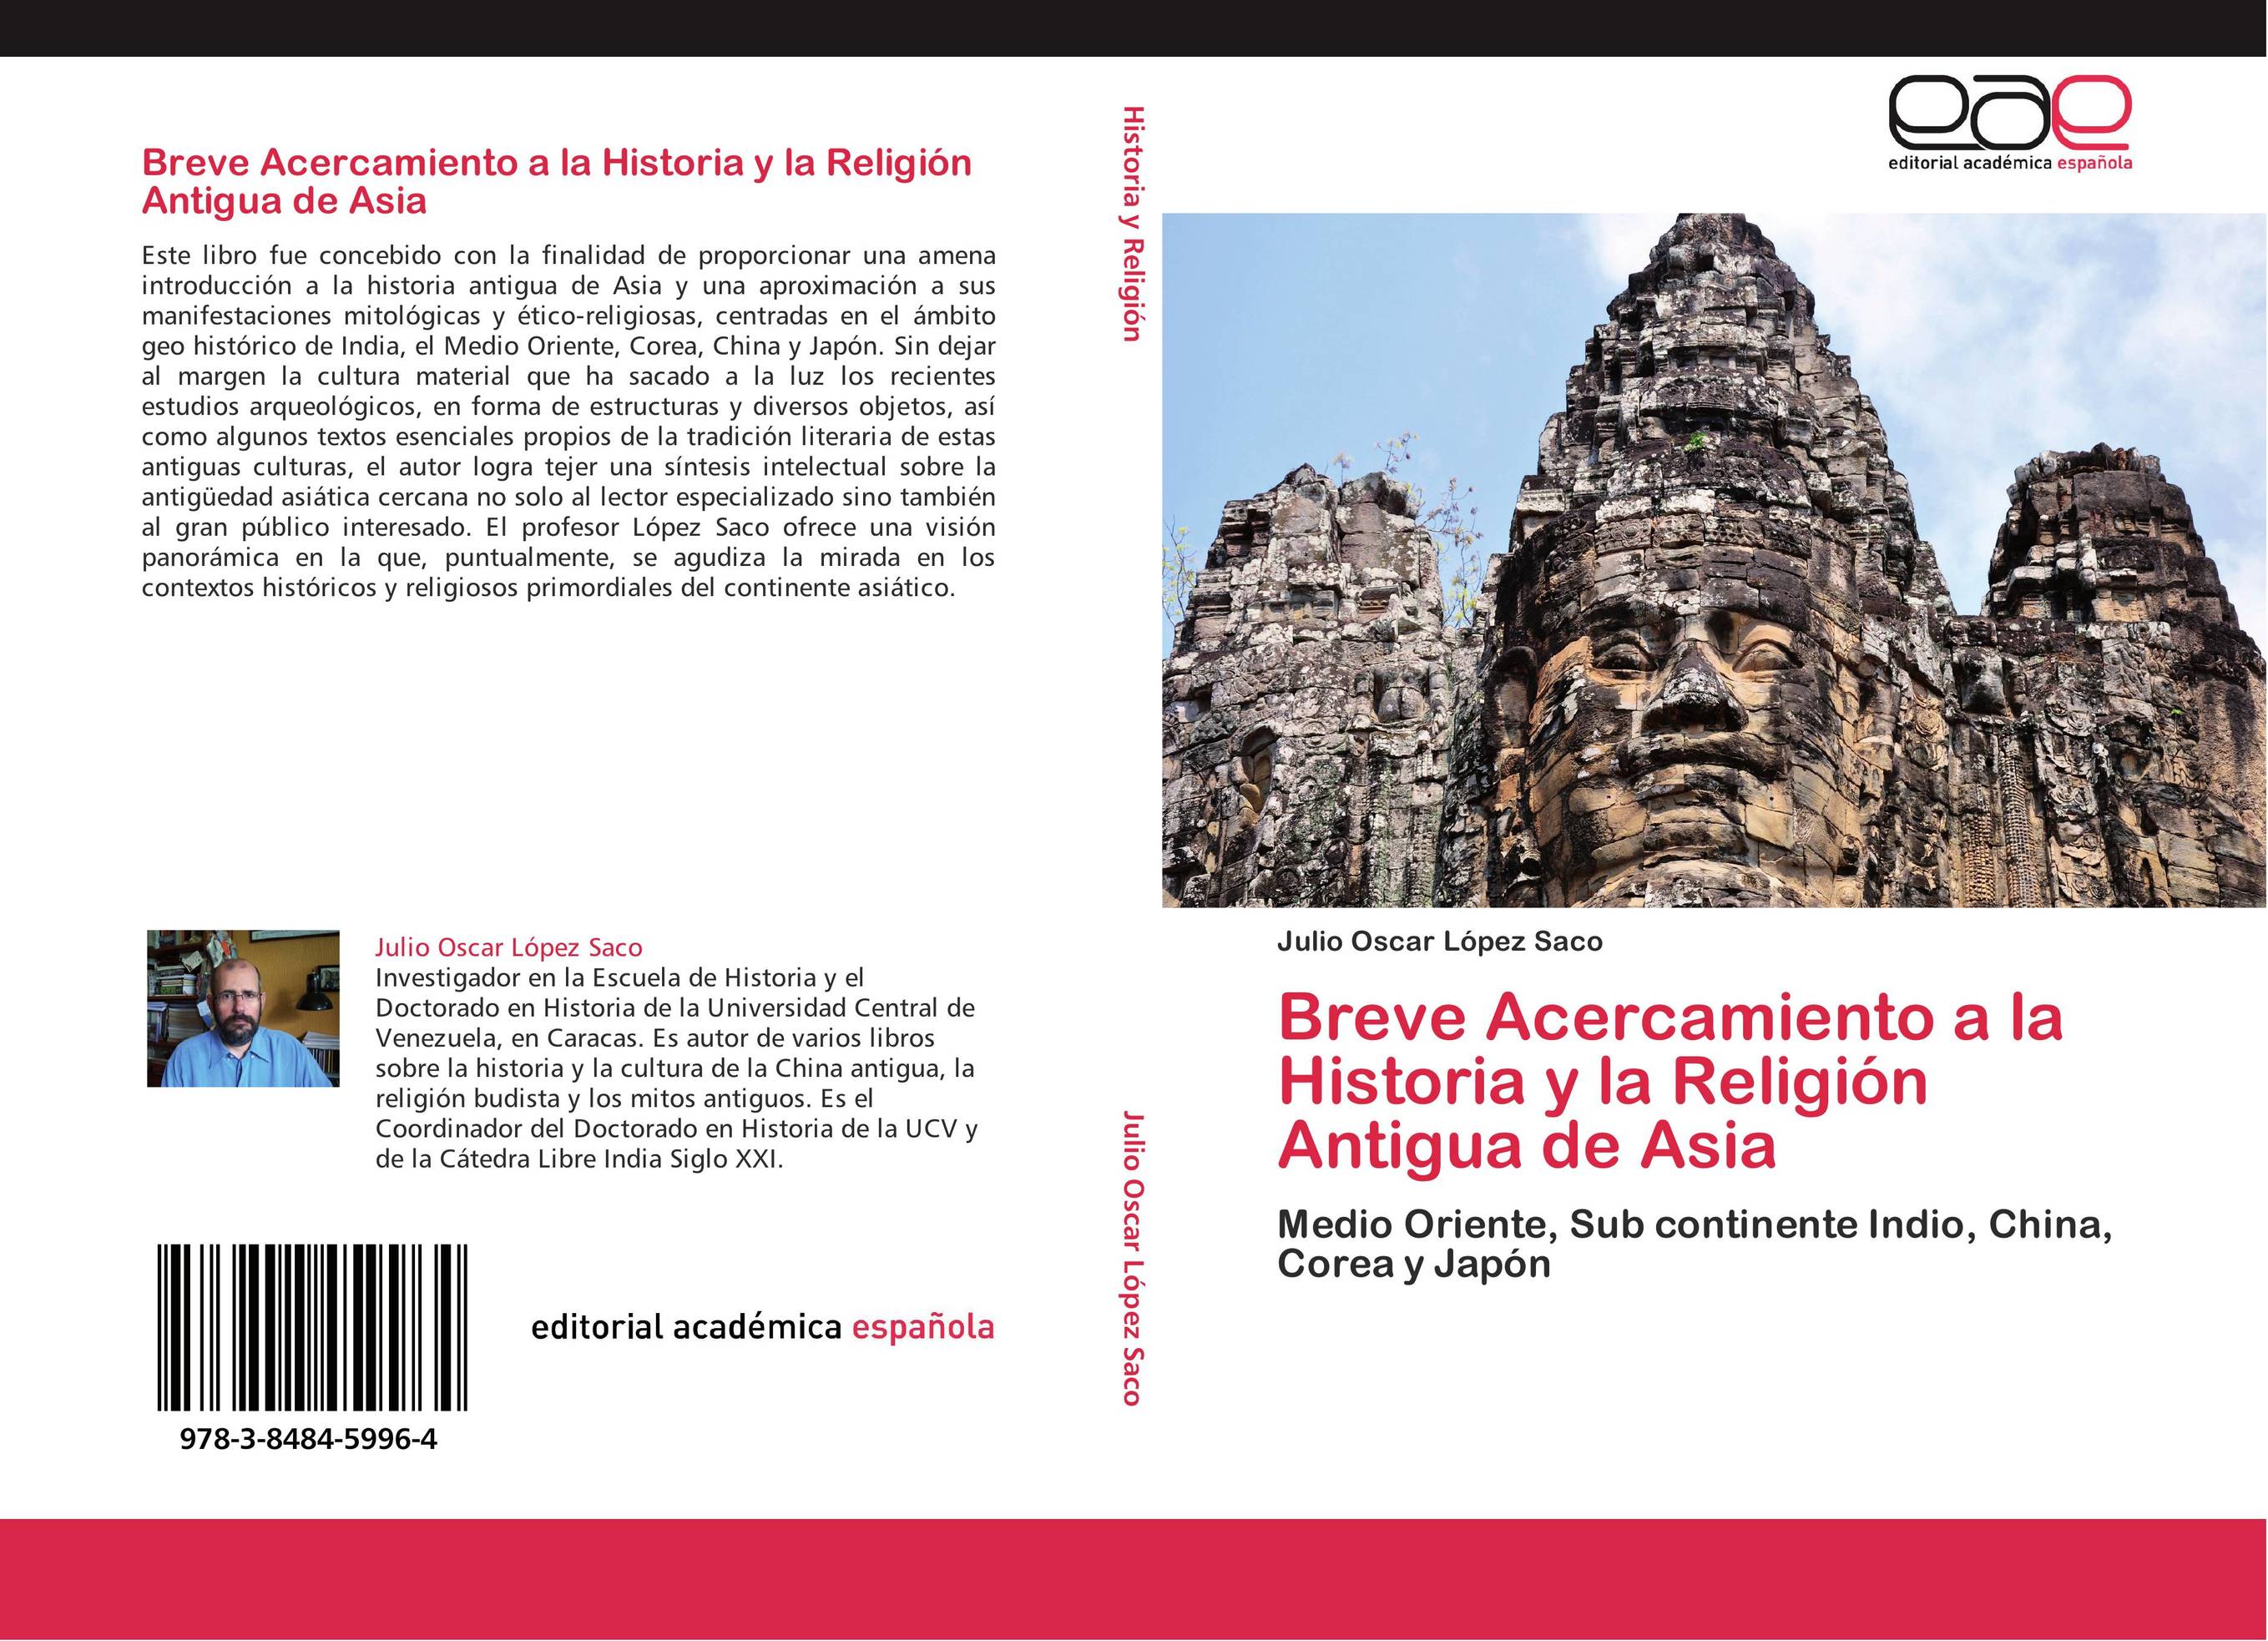 Breve Acercamiento a la Historia y la Religión Antigua de Asia